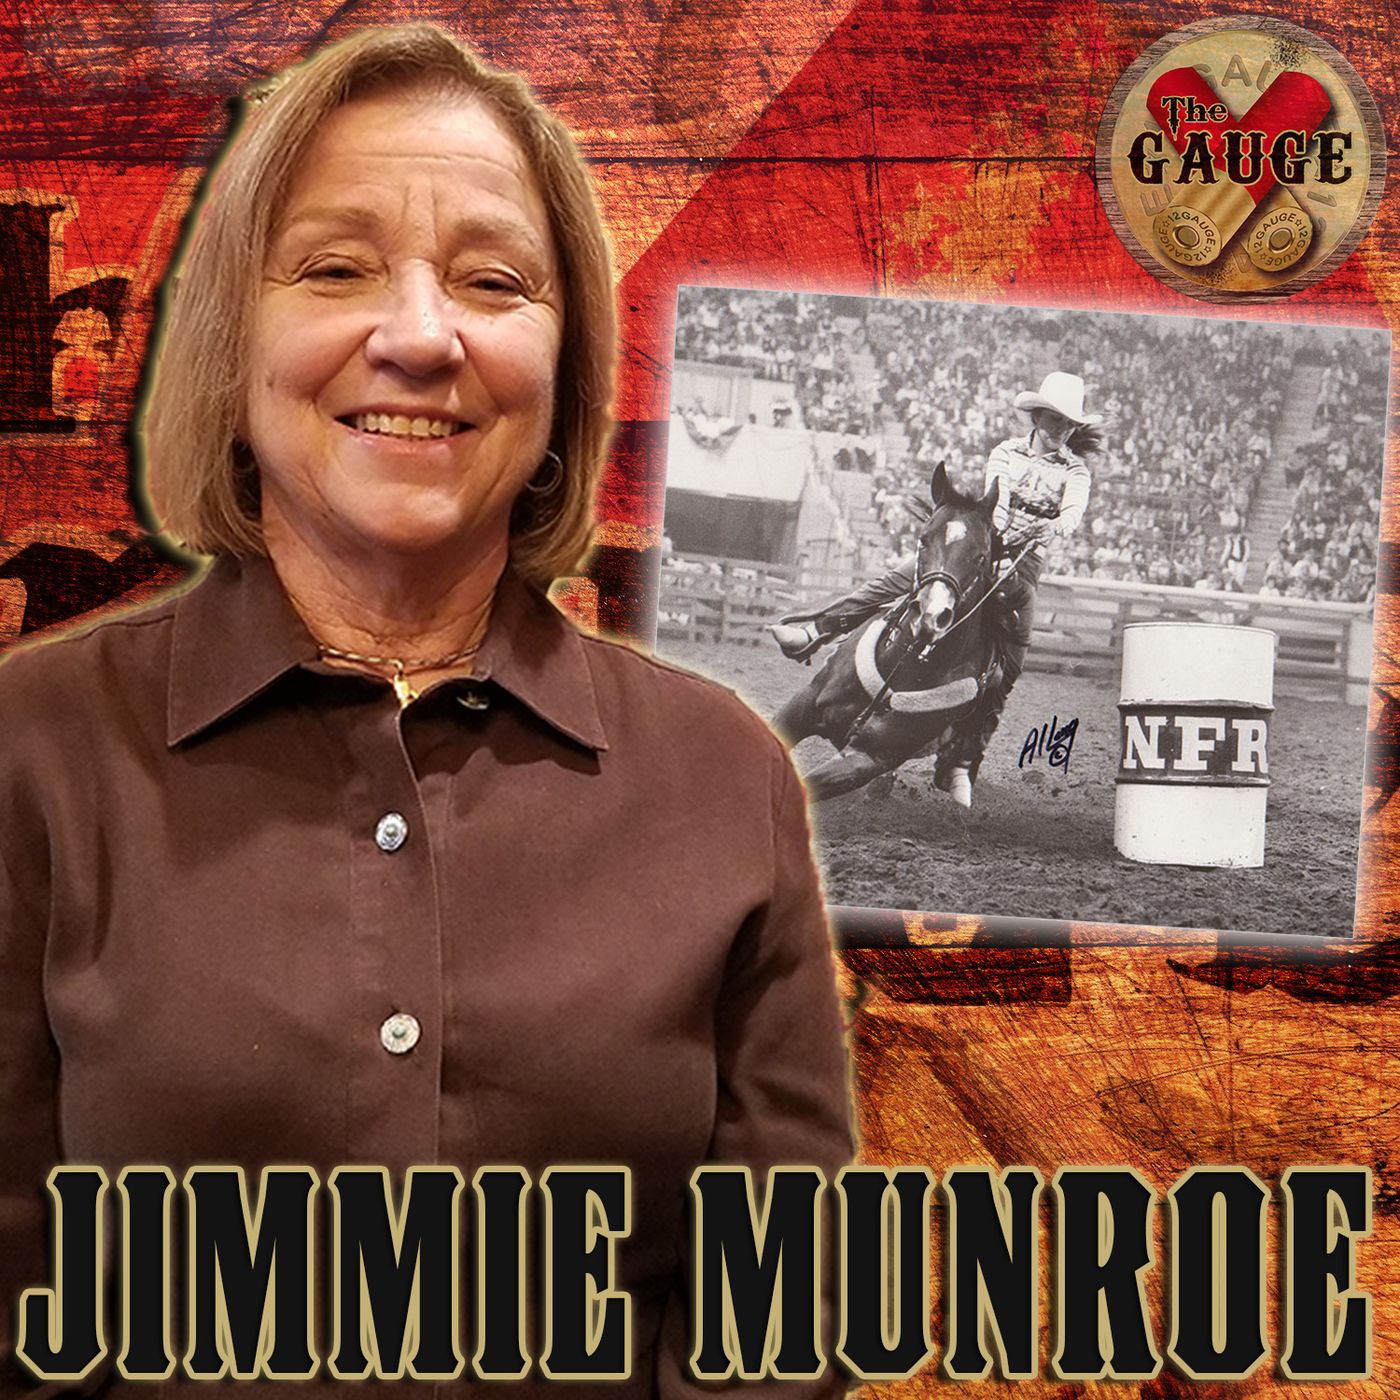 Jimmie Munroe